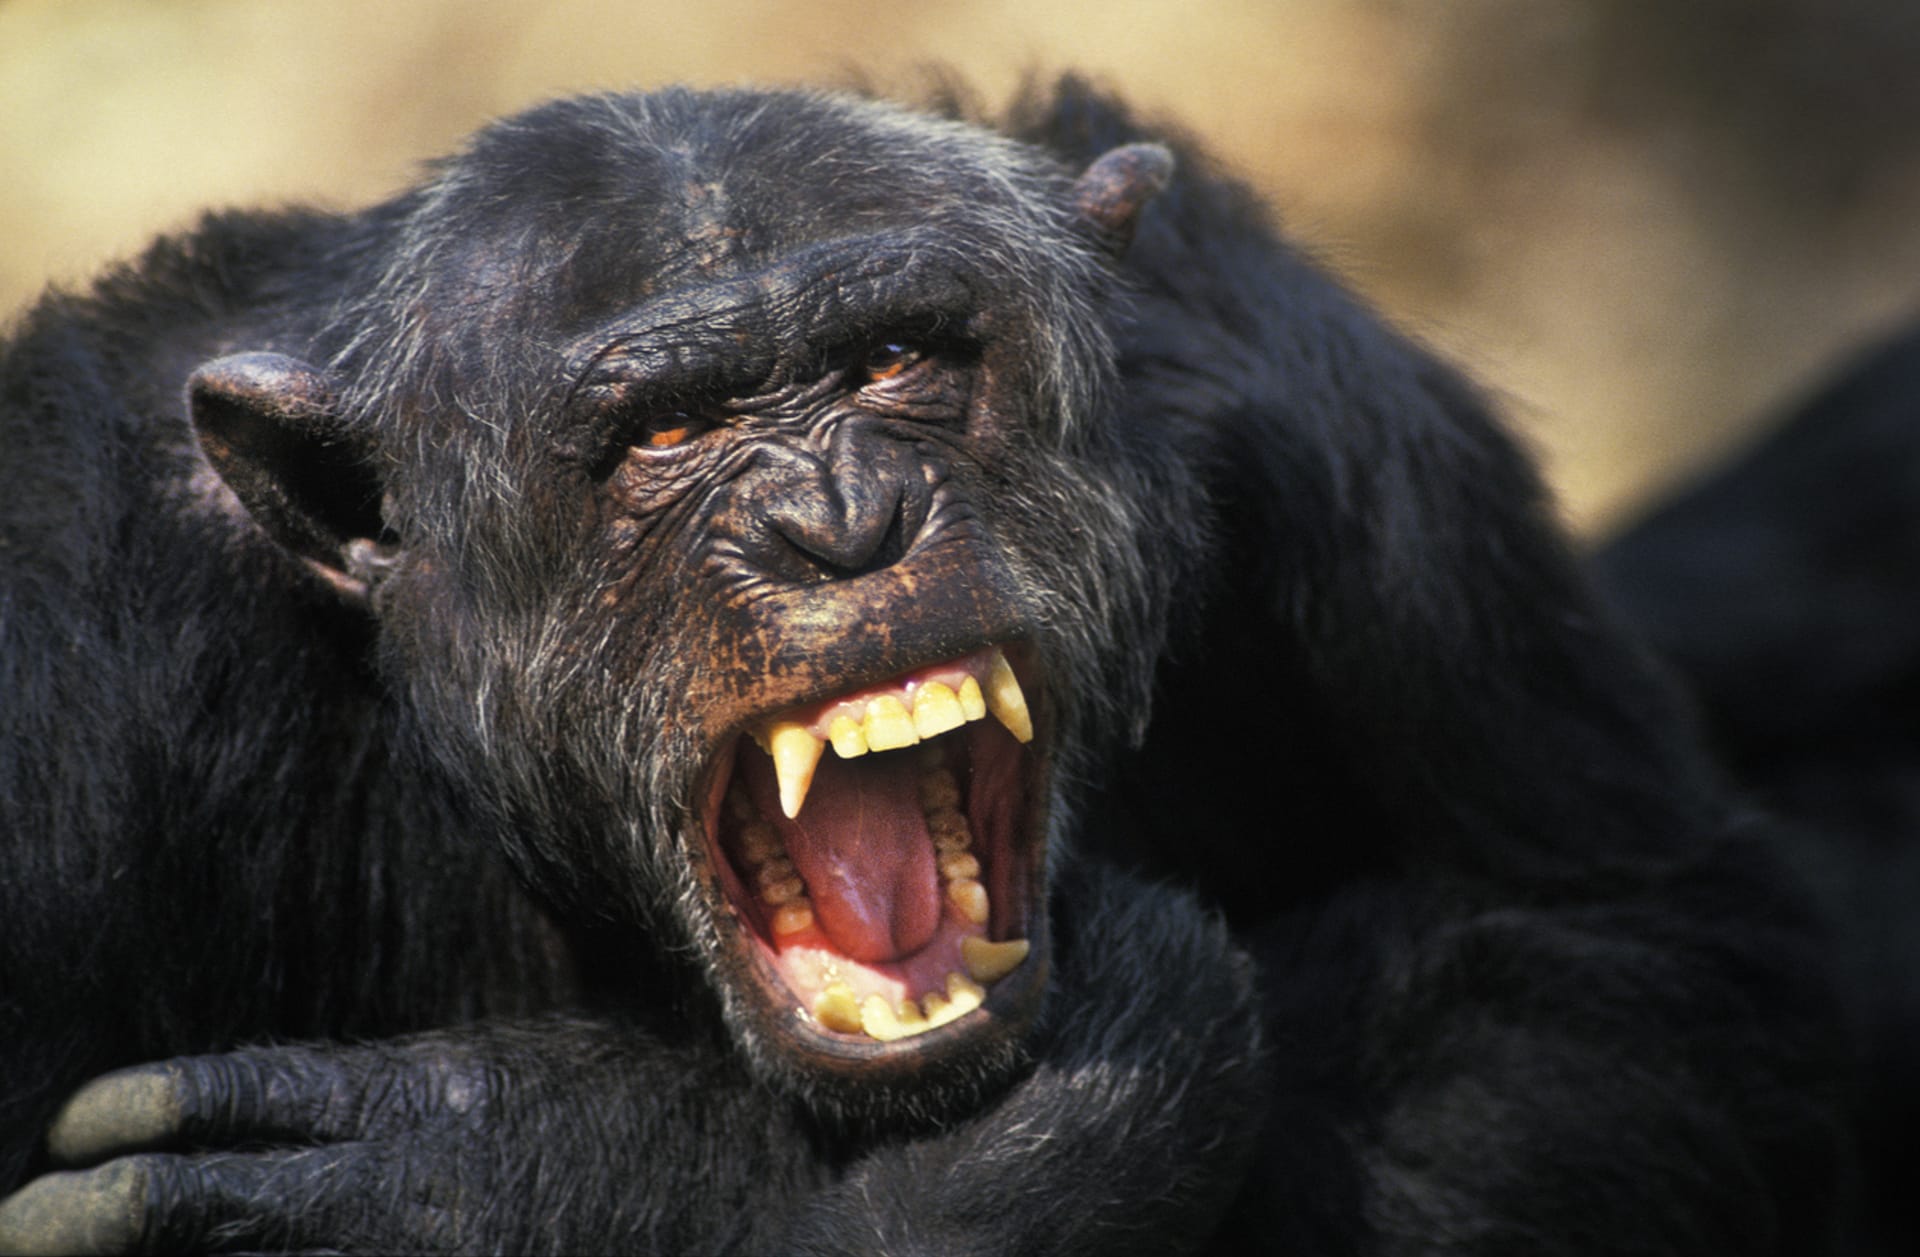 Šimpanzi patří mezi nejnebezpečnější zvířata na planetě